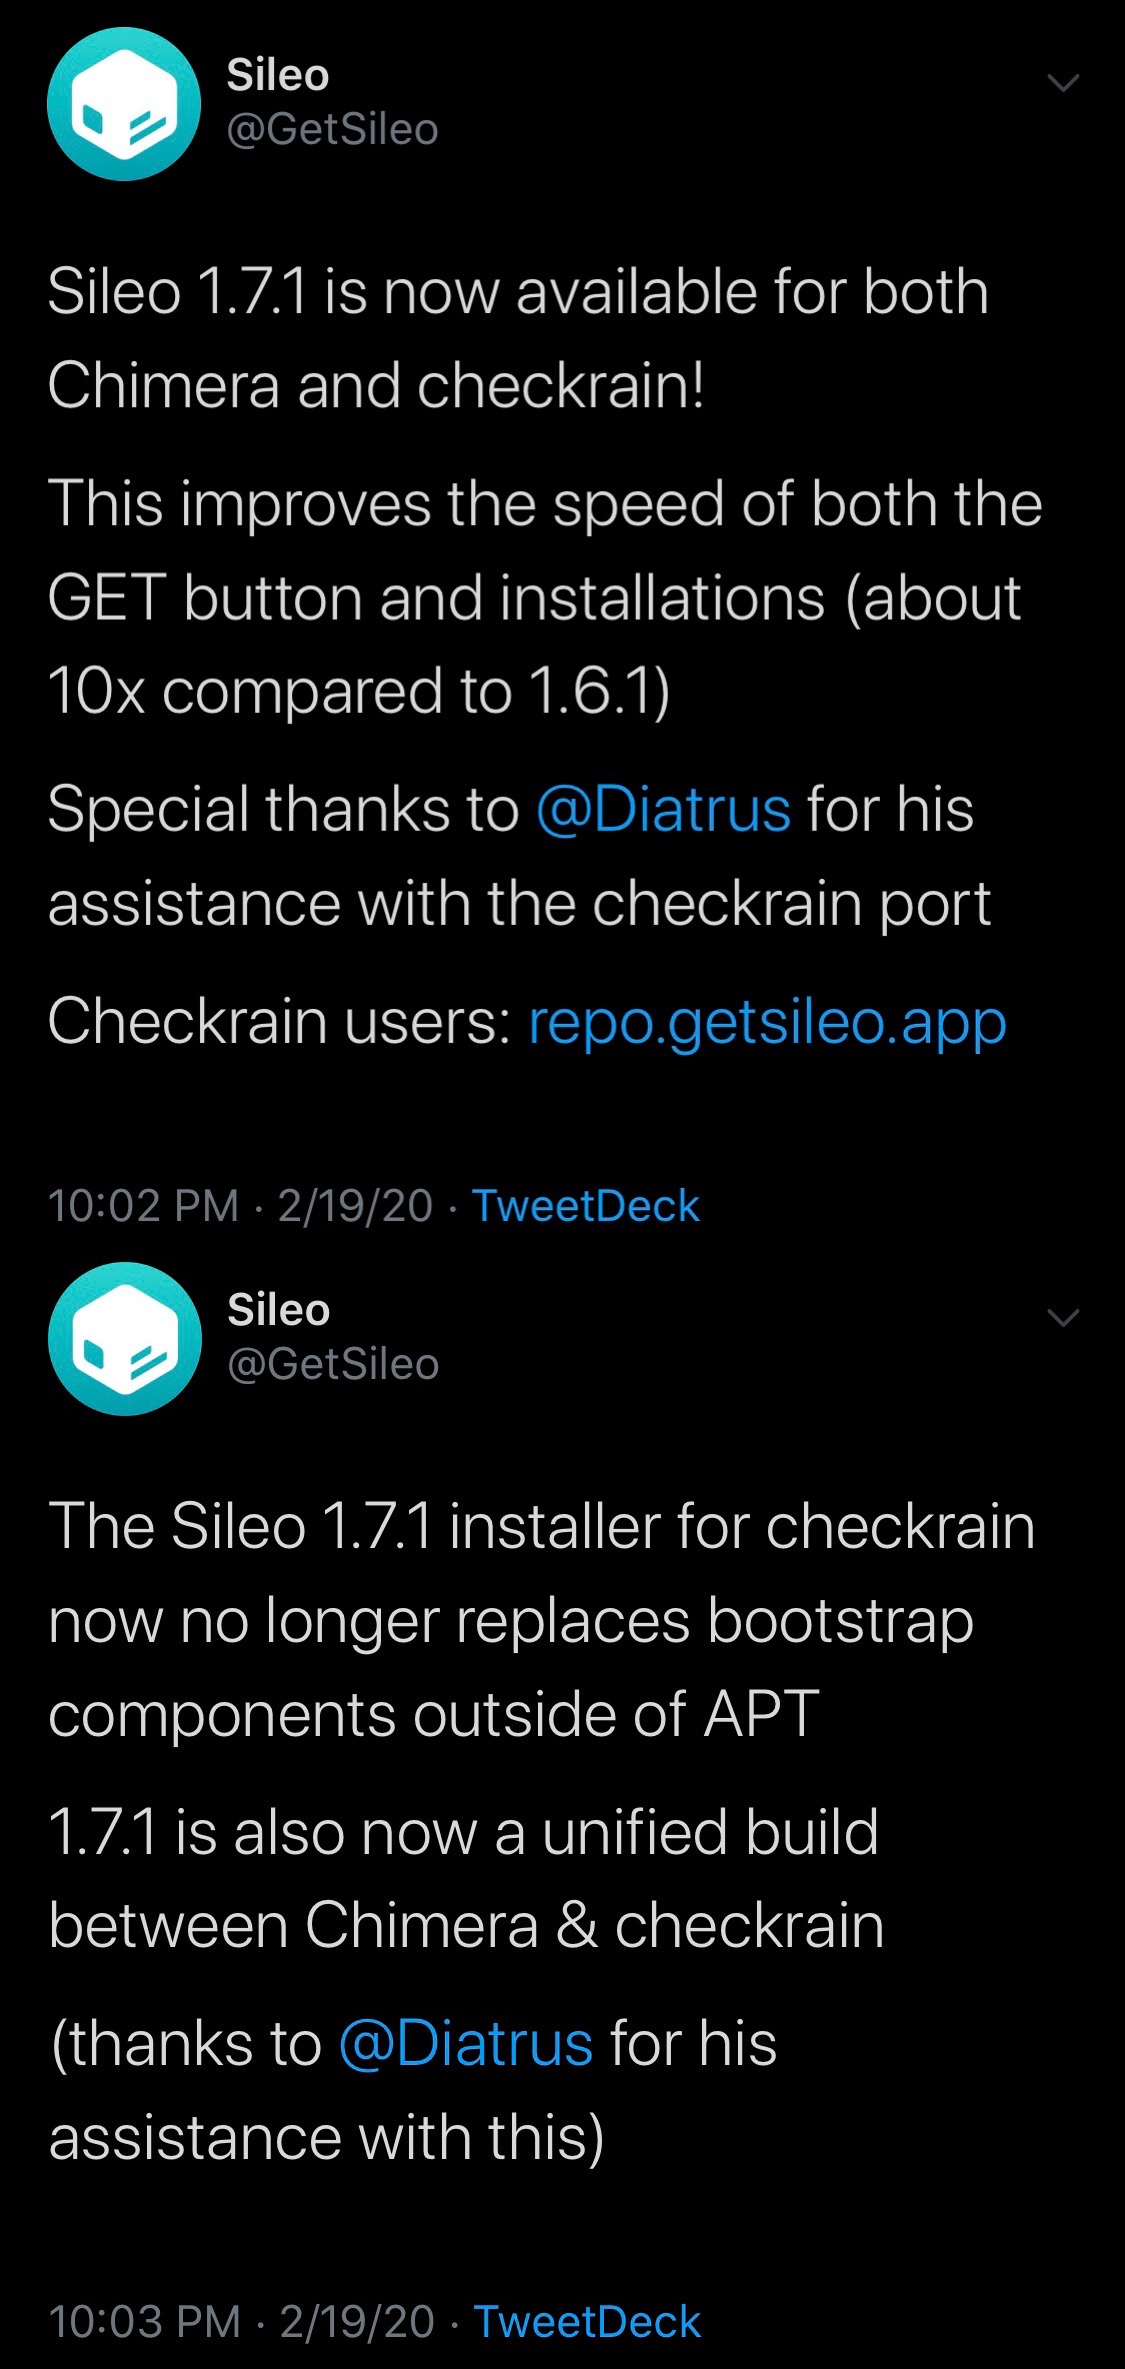 Sileo v1.7.1 släpptes officiellt för användare av Chimera jimebreak och checkra1n 3